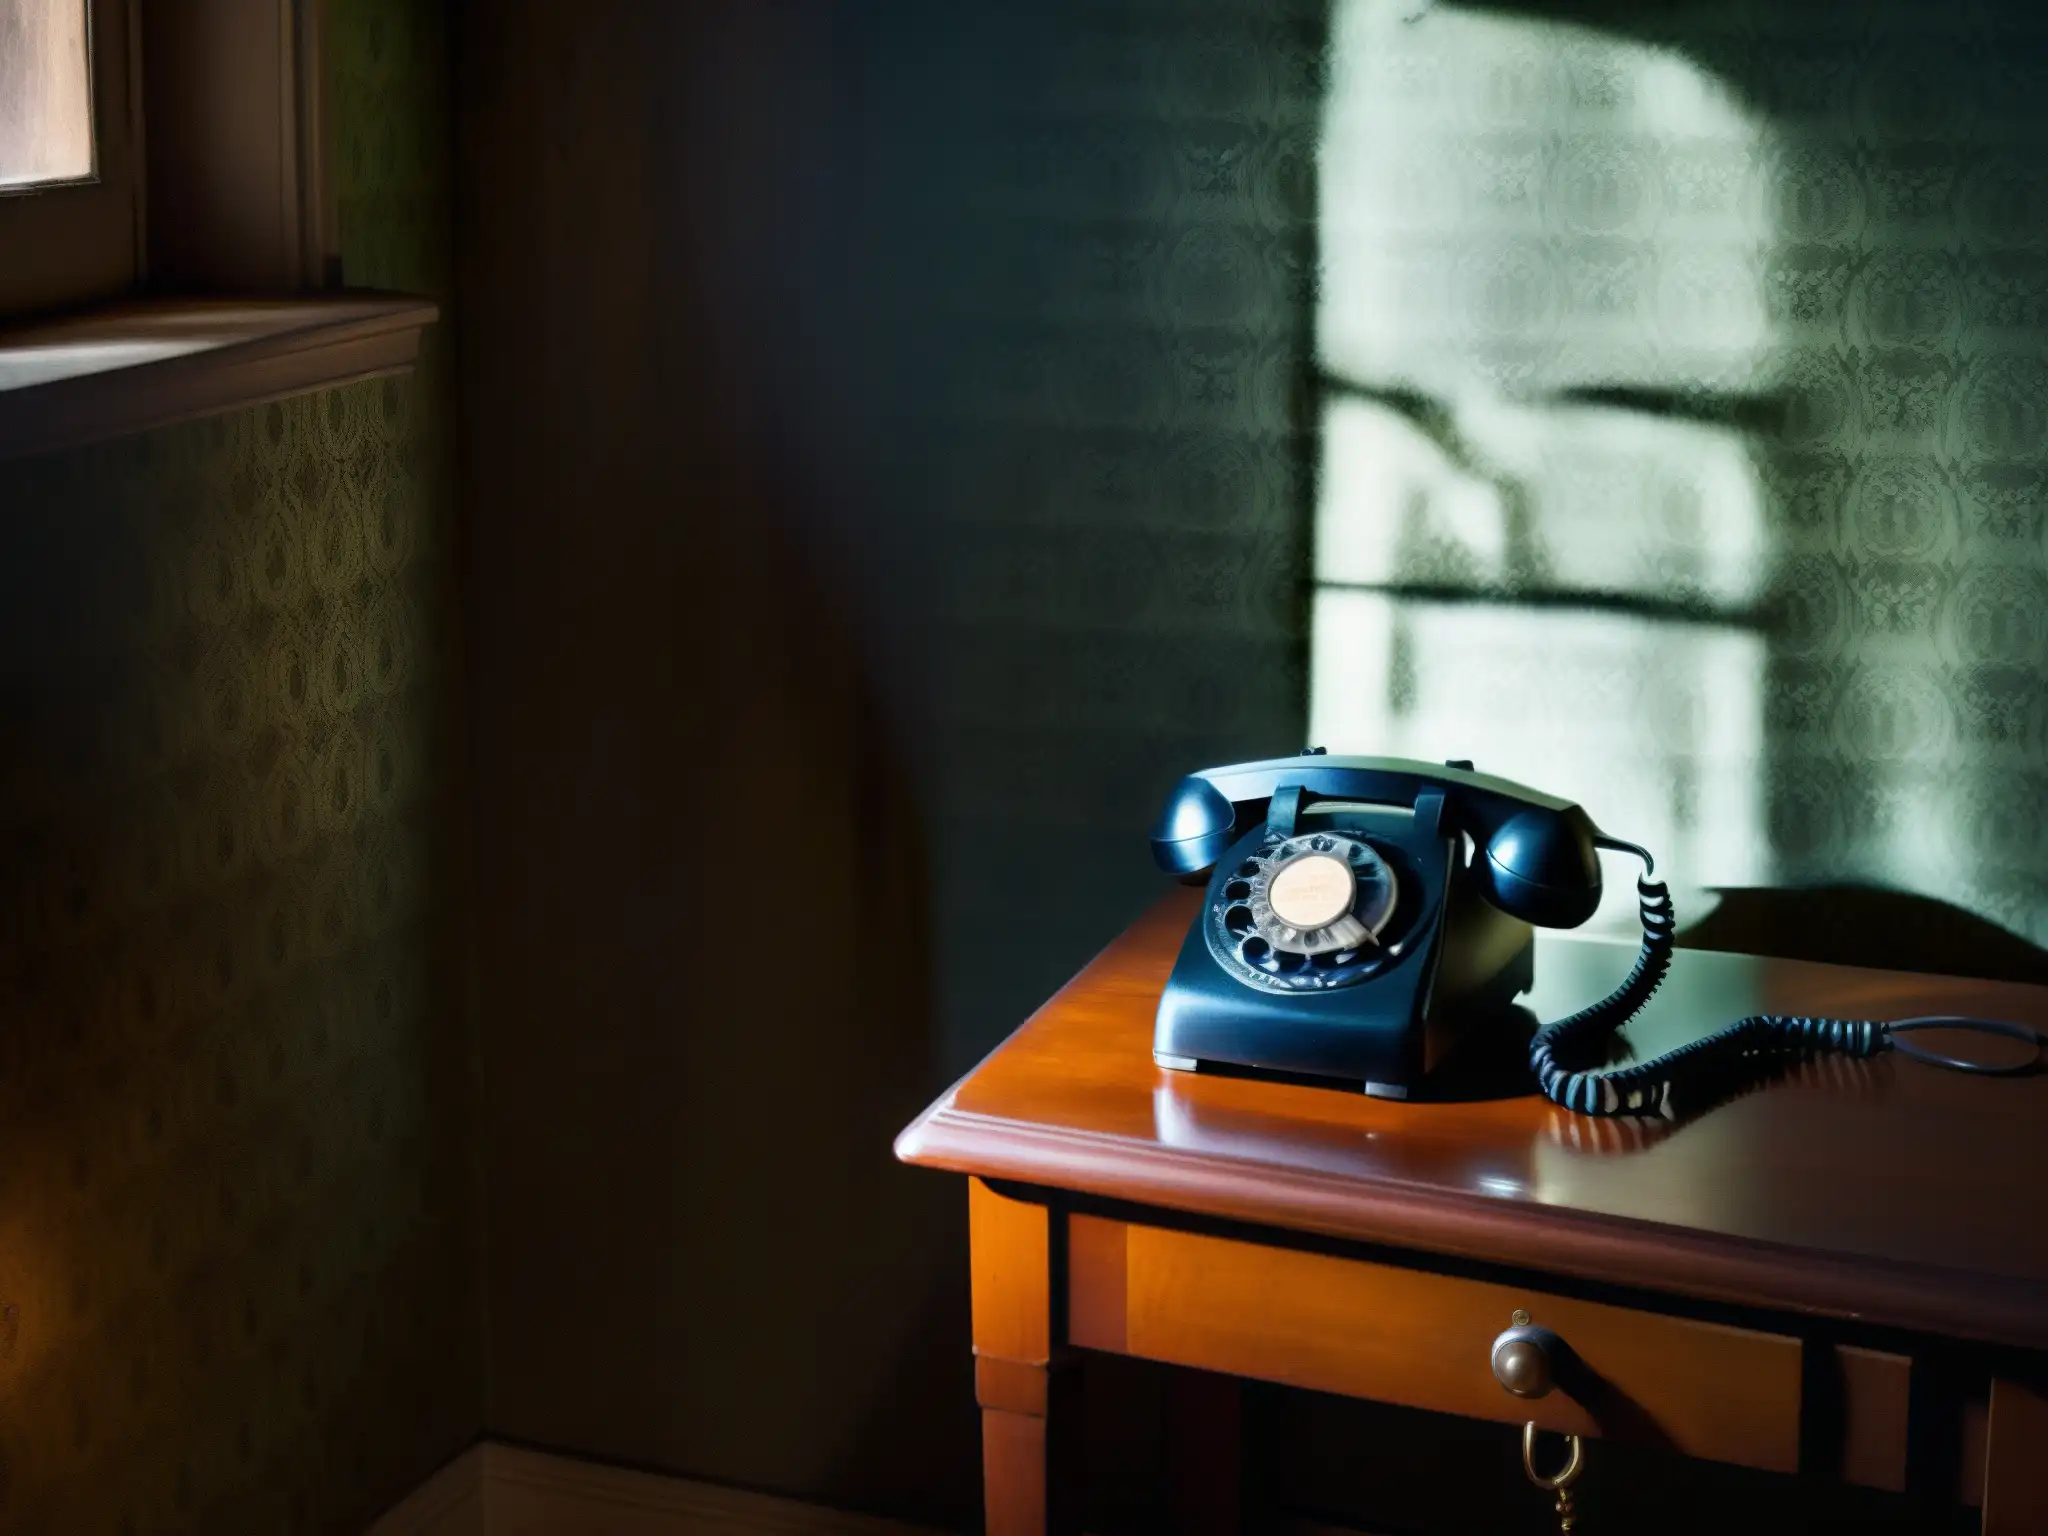 Una atmósfera inquietante envuelve la habitación con un teléfono antiguo y la llamada telefónica de la muerte